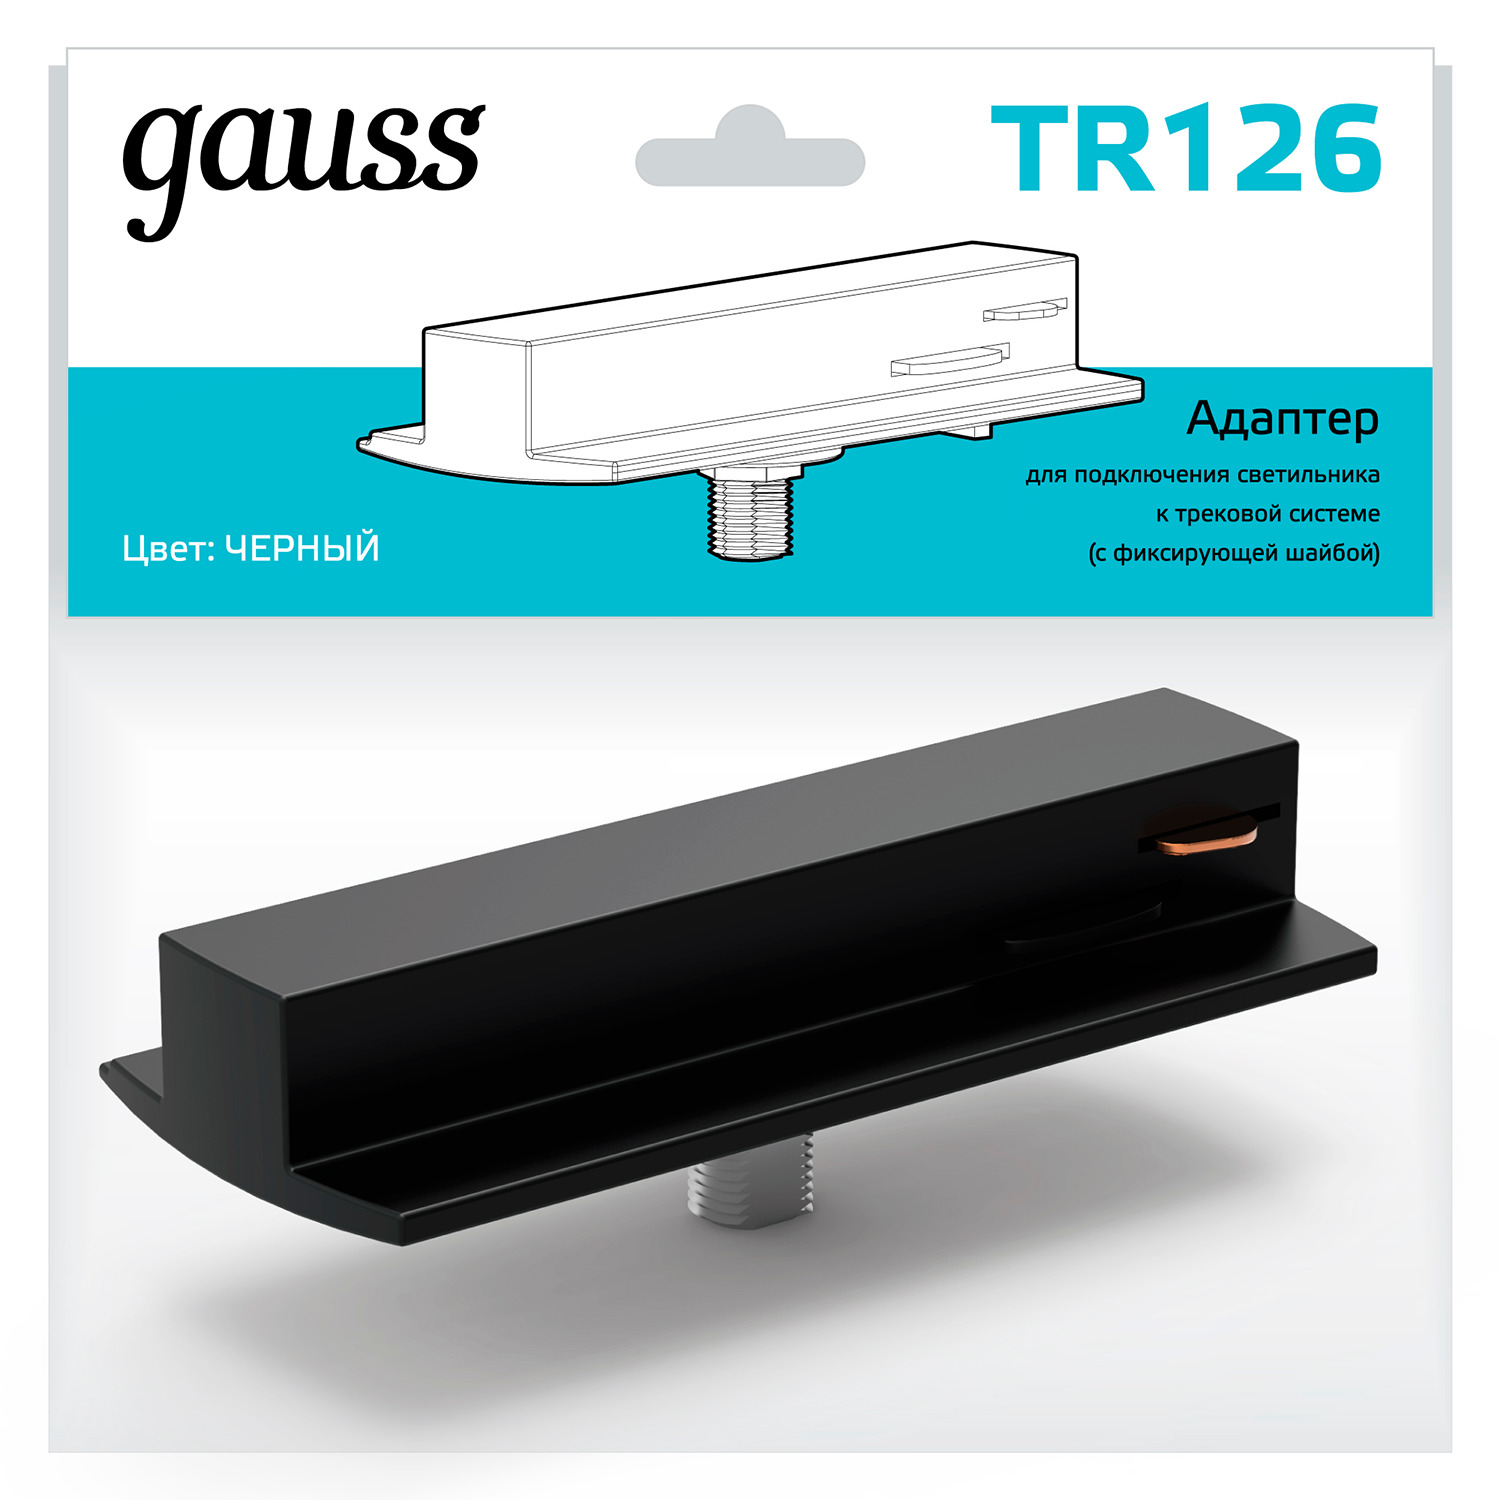 Адаптер Gauss для подключения светильника к трековой системе (с фиксирующей шайбой) цвет черный адаптер для трекового светильника maytoni accessories for tracks radity tra084fc 11lw